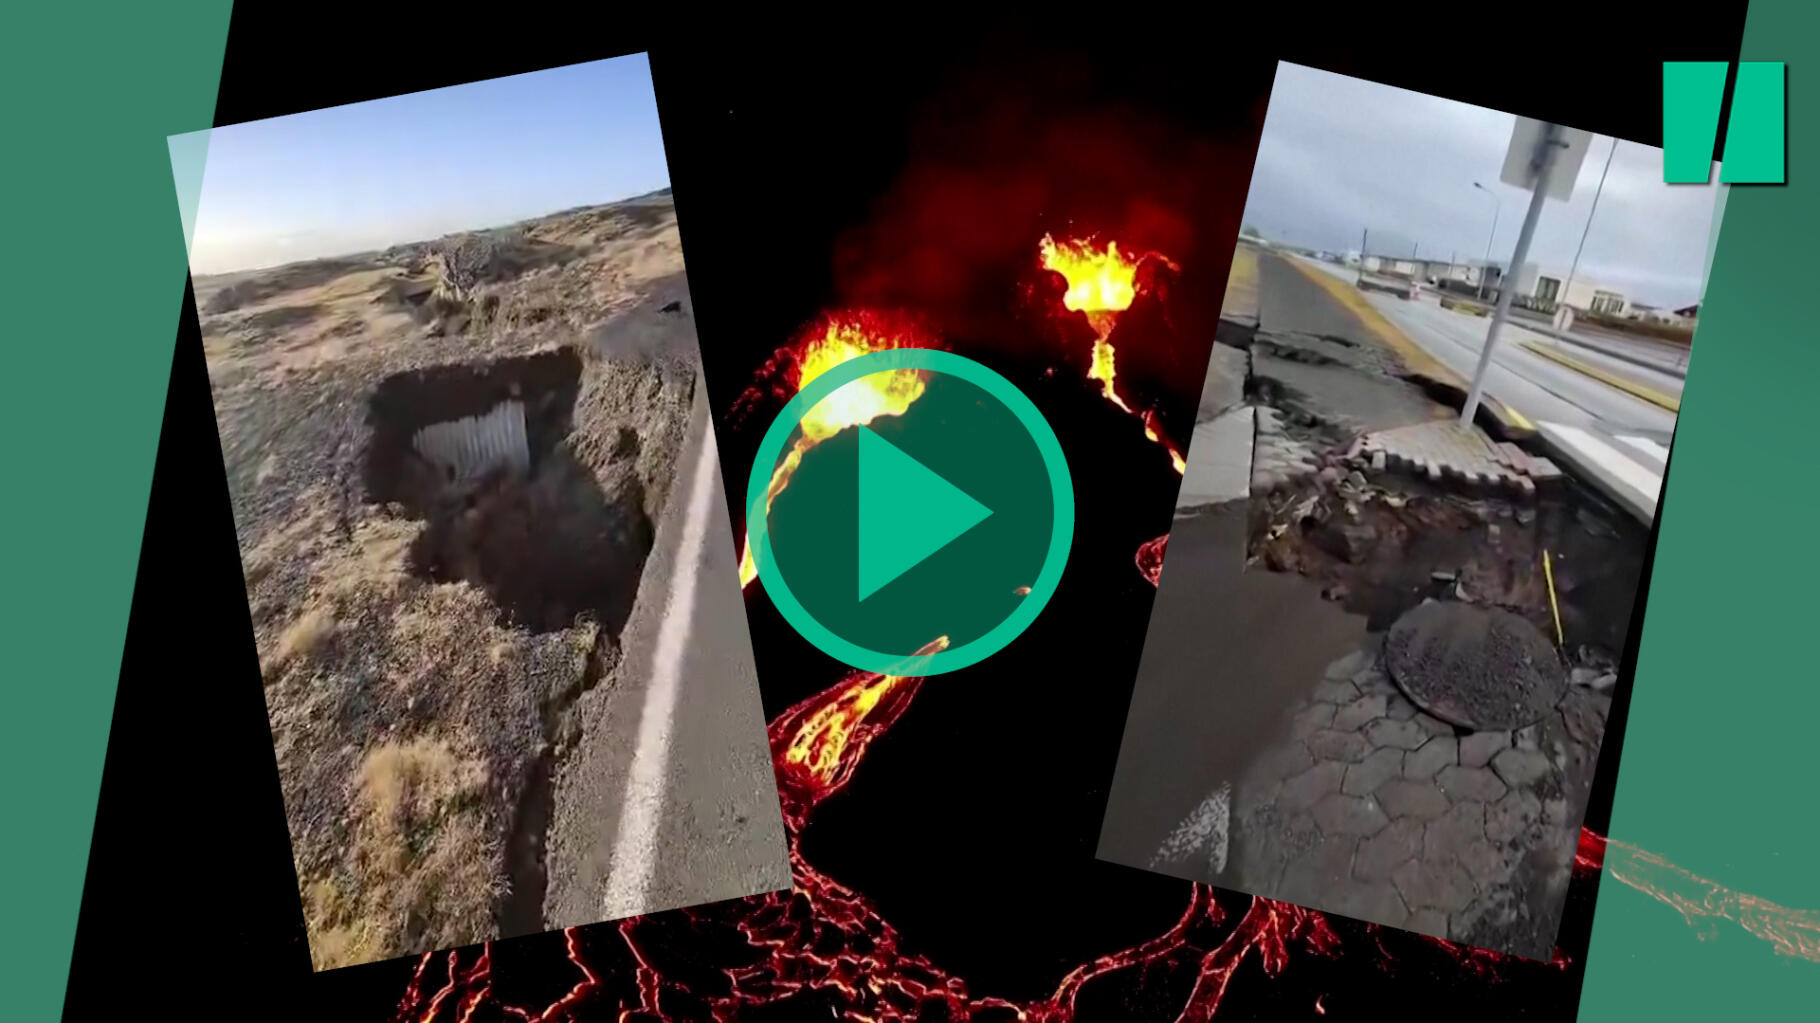 Volcan Islande : vers une éruption imminente ?